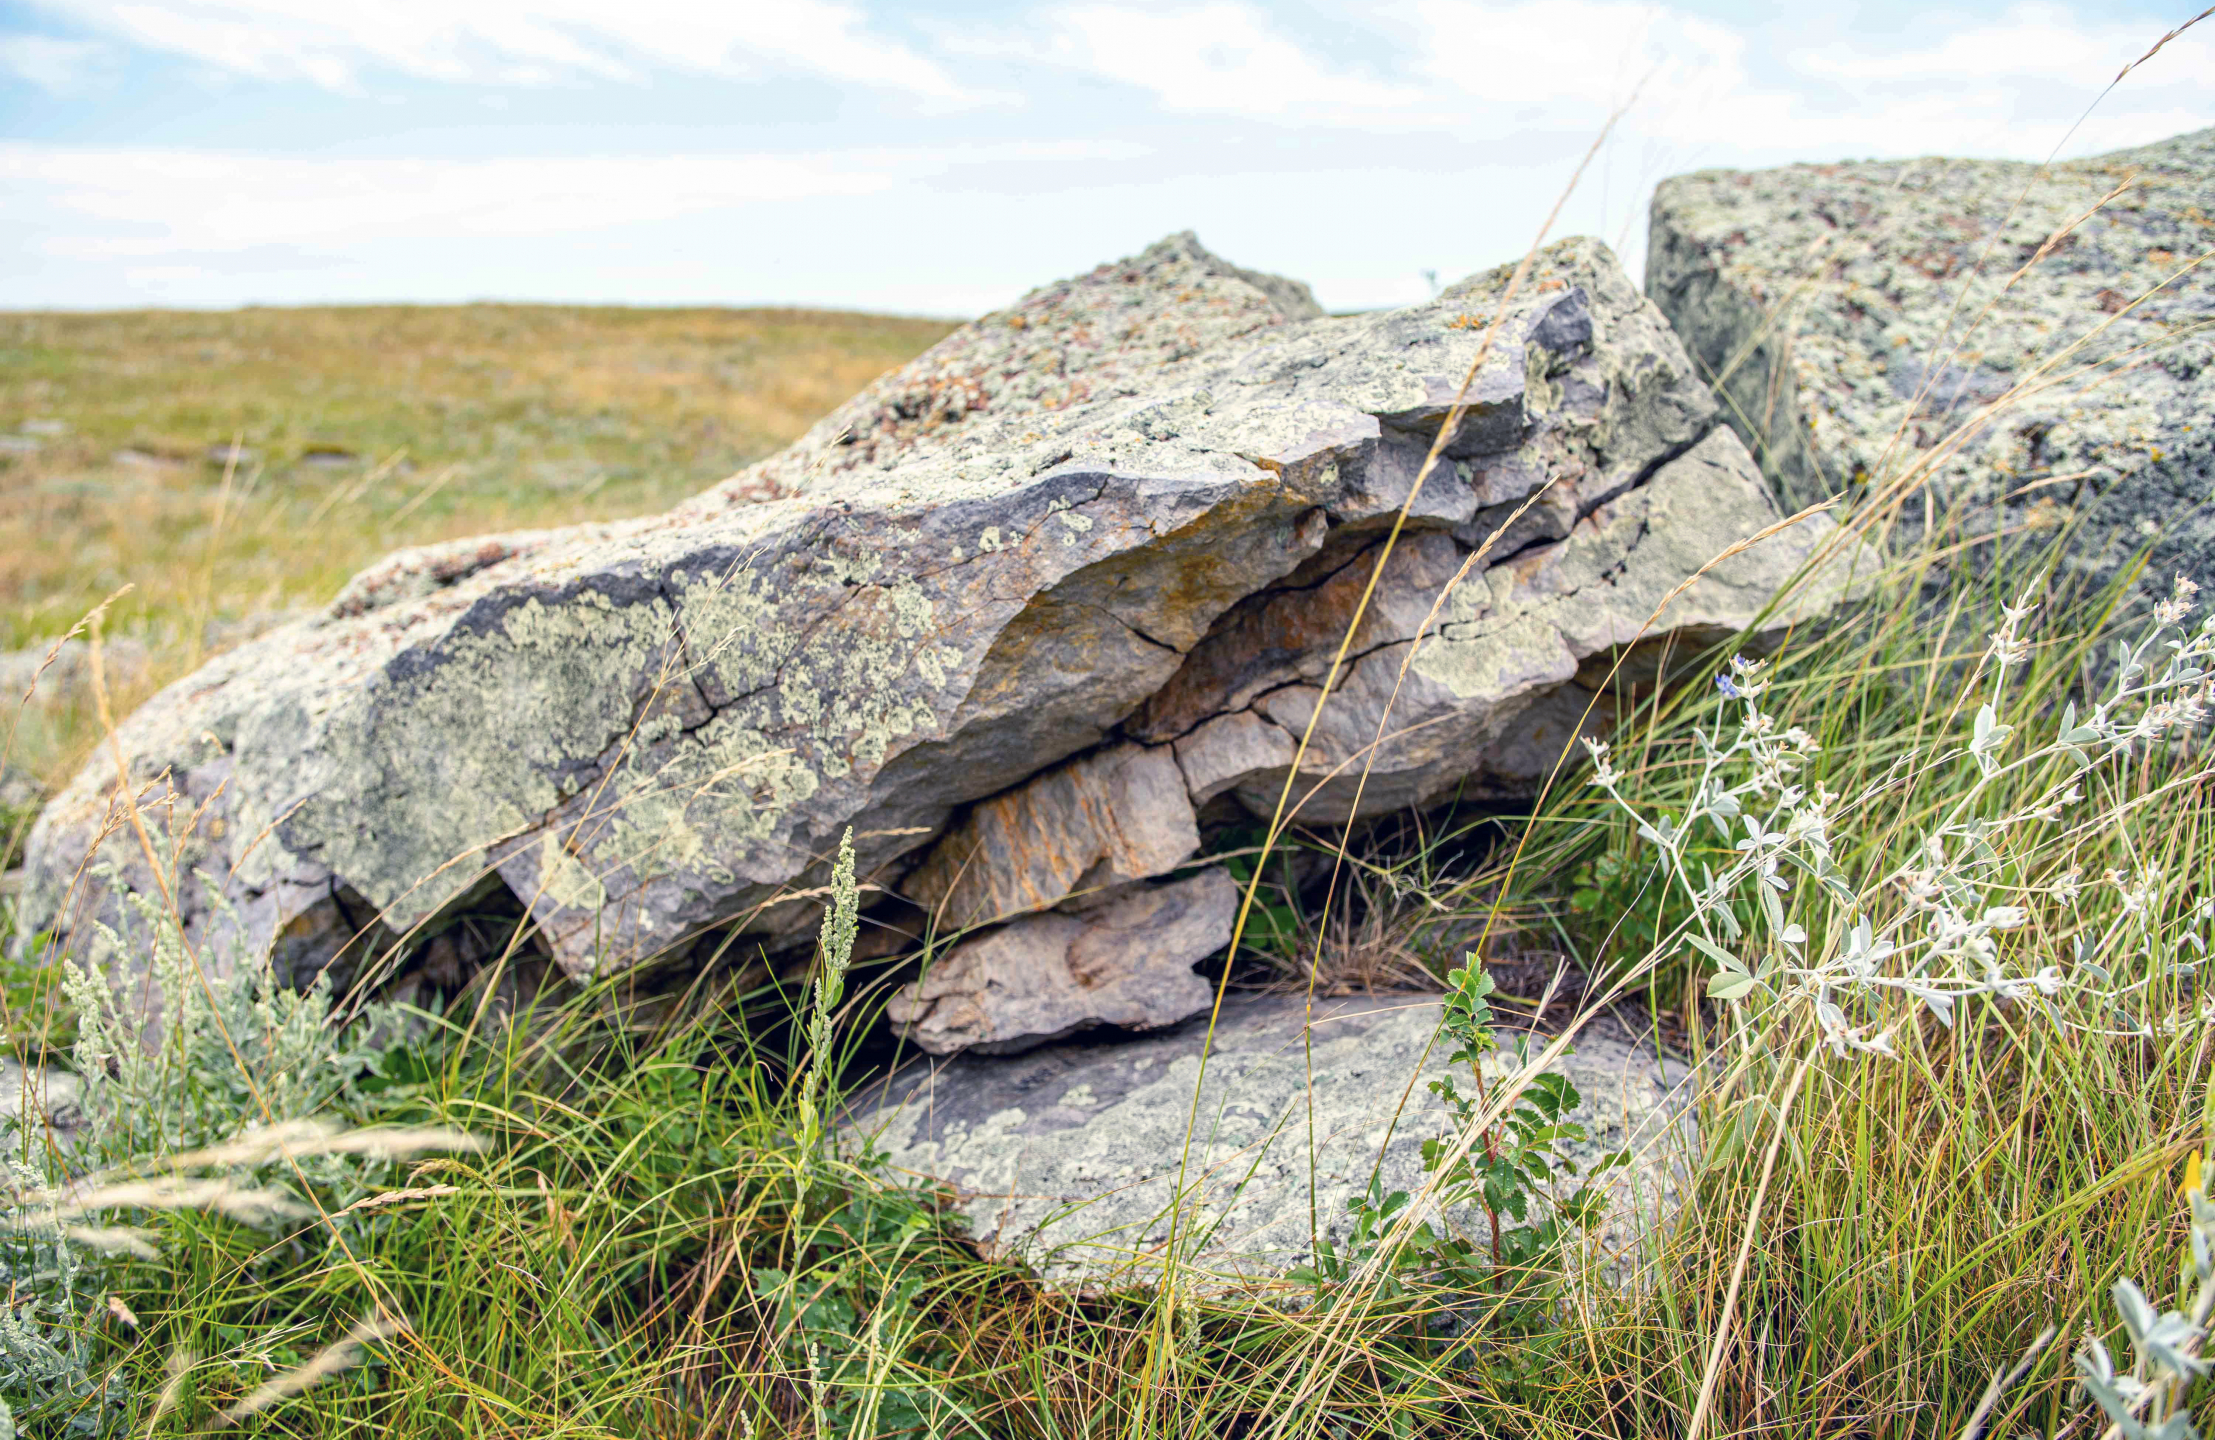 Rocks on a pile on the prairie.